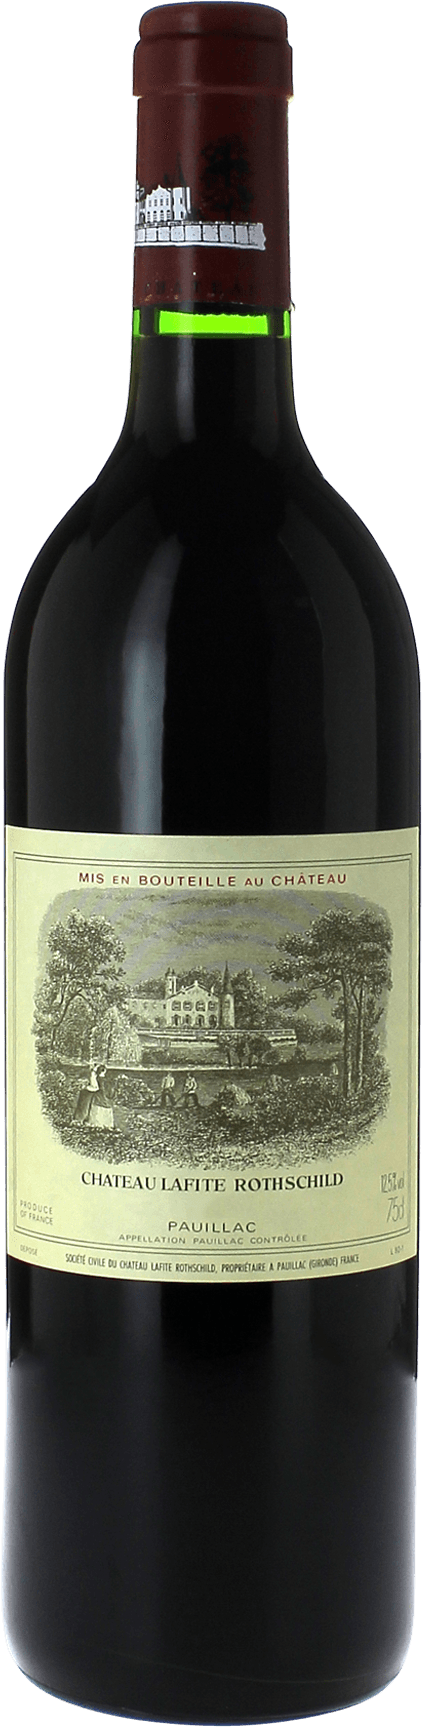 Lafite rothschild pauillac 2015 1er Grand cru class Pauillac, Bordeaux rouge